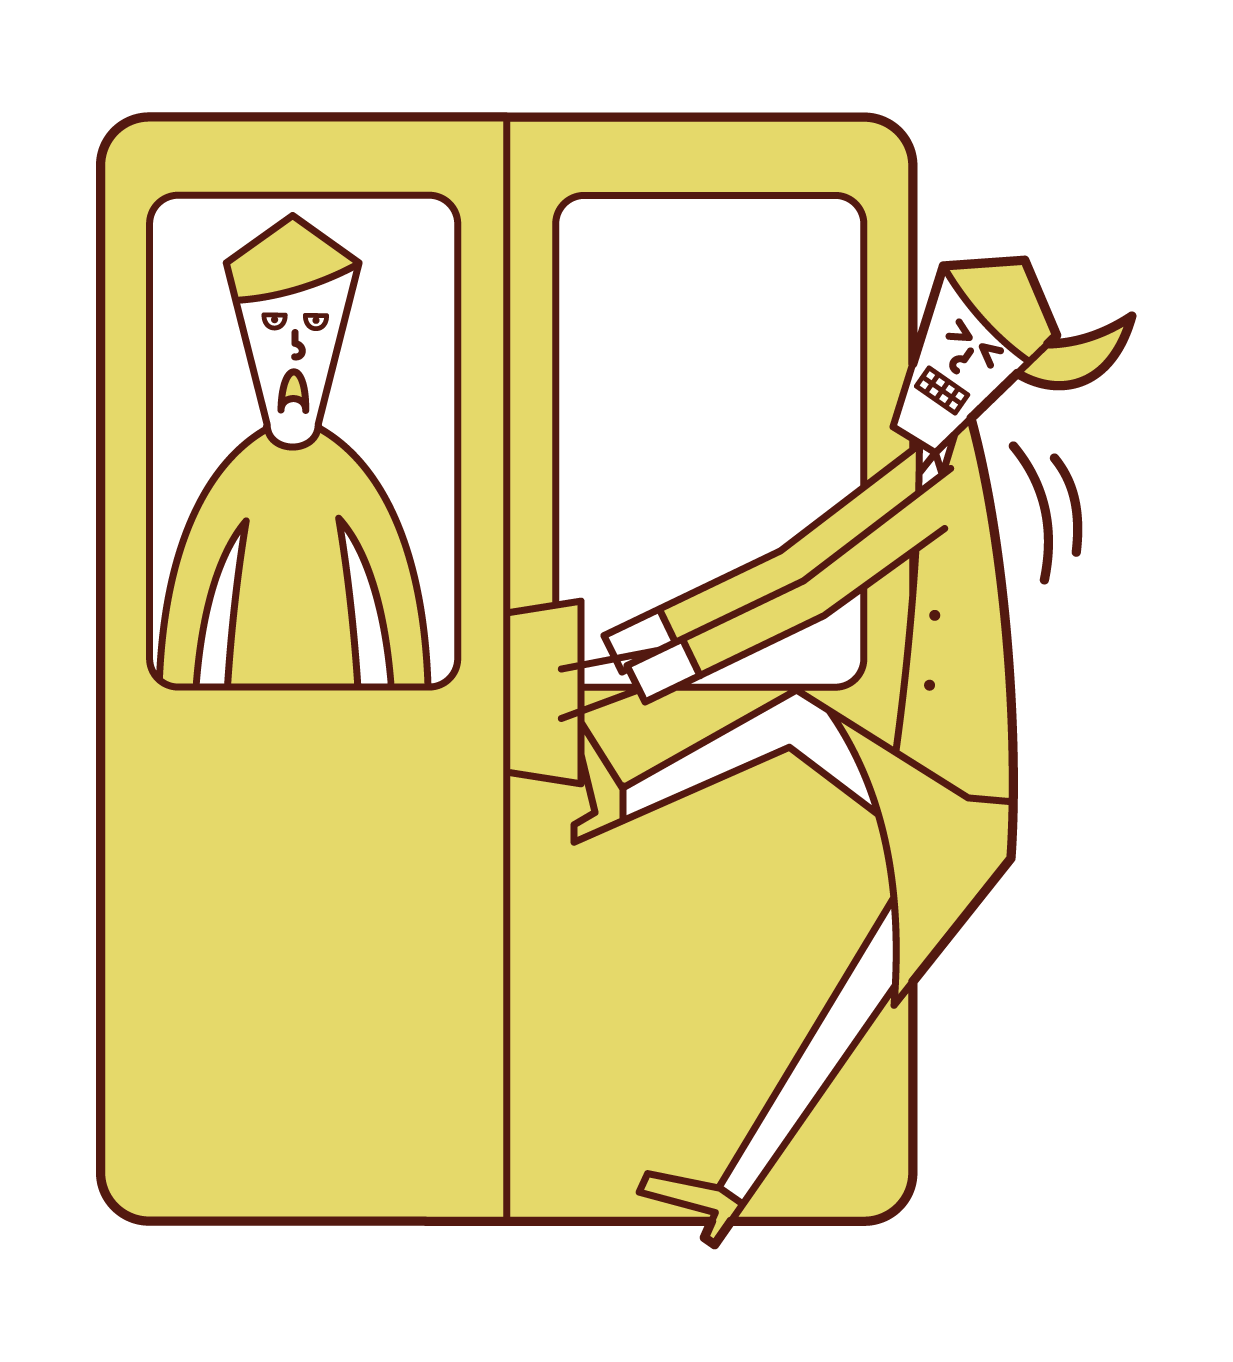 電車のドアに荷物が挟まれた人 女性 のイラスト フリーイラスト素材 Kukukeke ククケケ